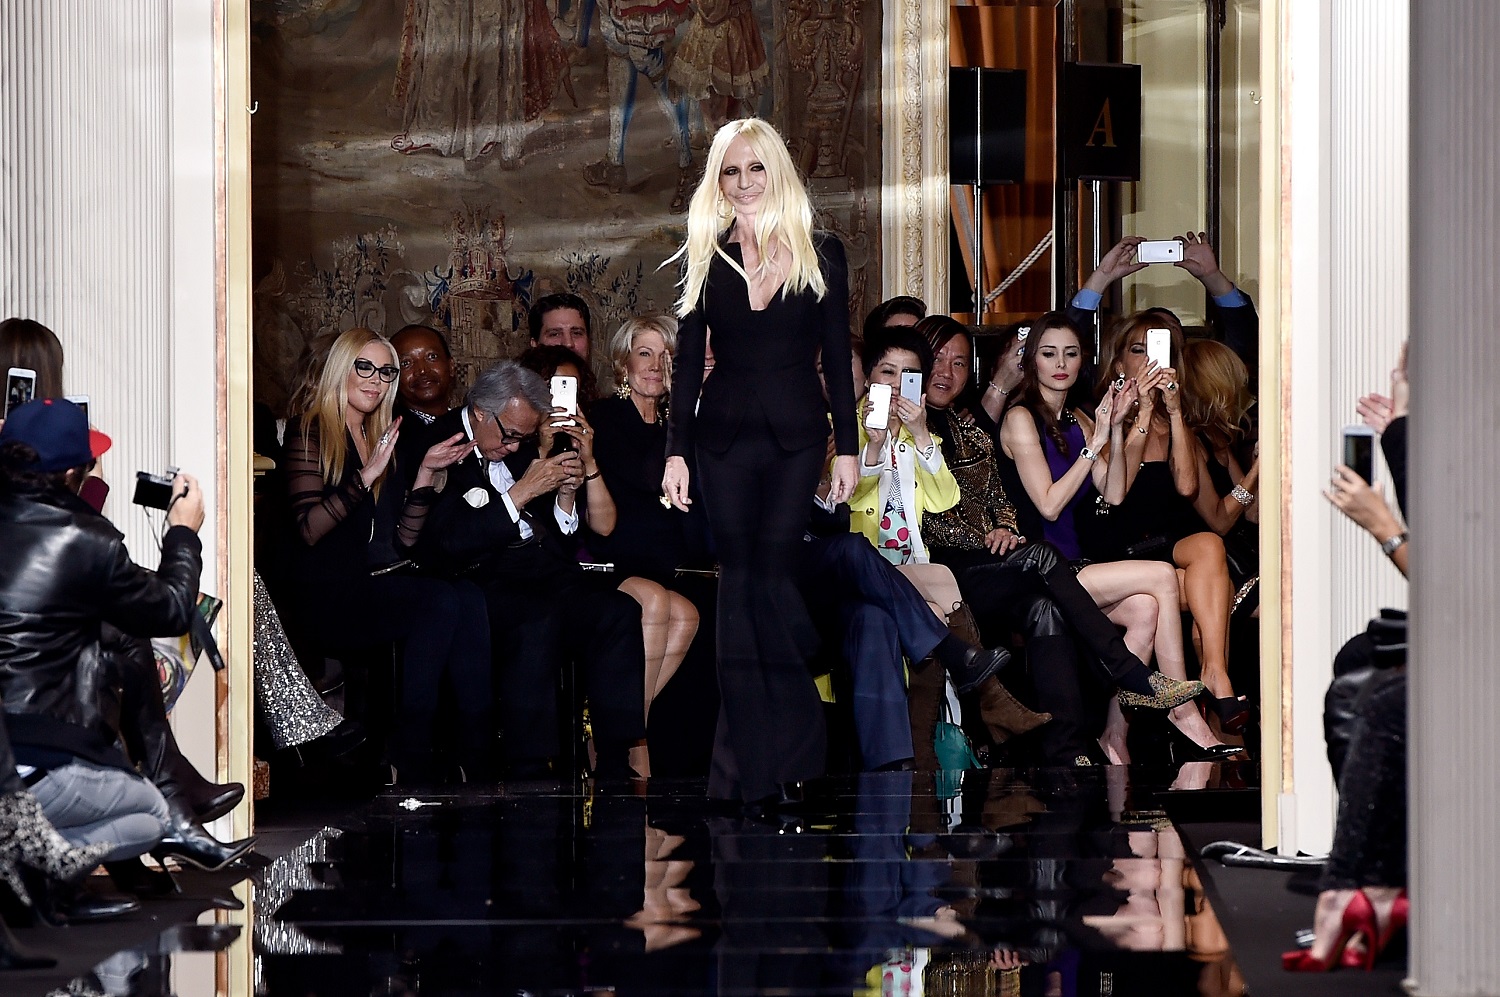 Le pellicce non vanno più di moda: parola di Donatella Versace